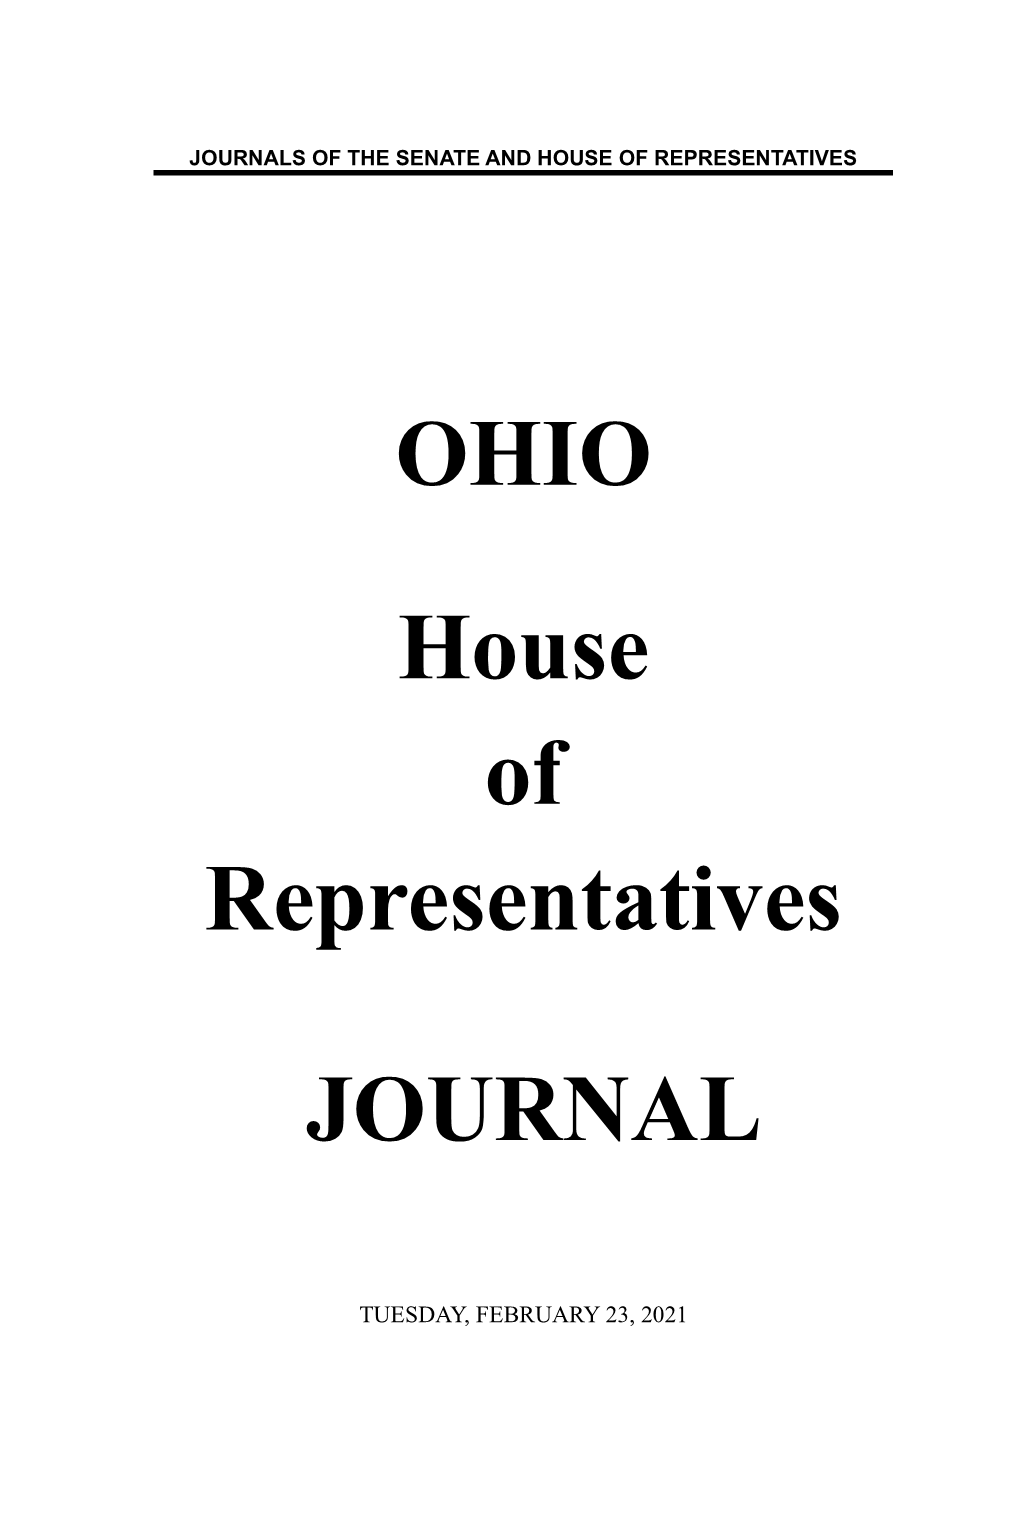 February 23, 2021 198 House Journal, Tuesday, February 23, 2021